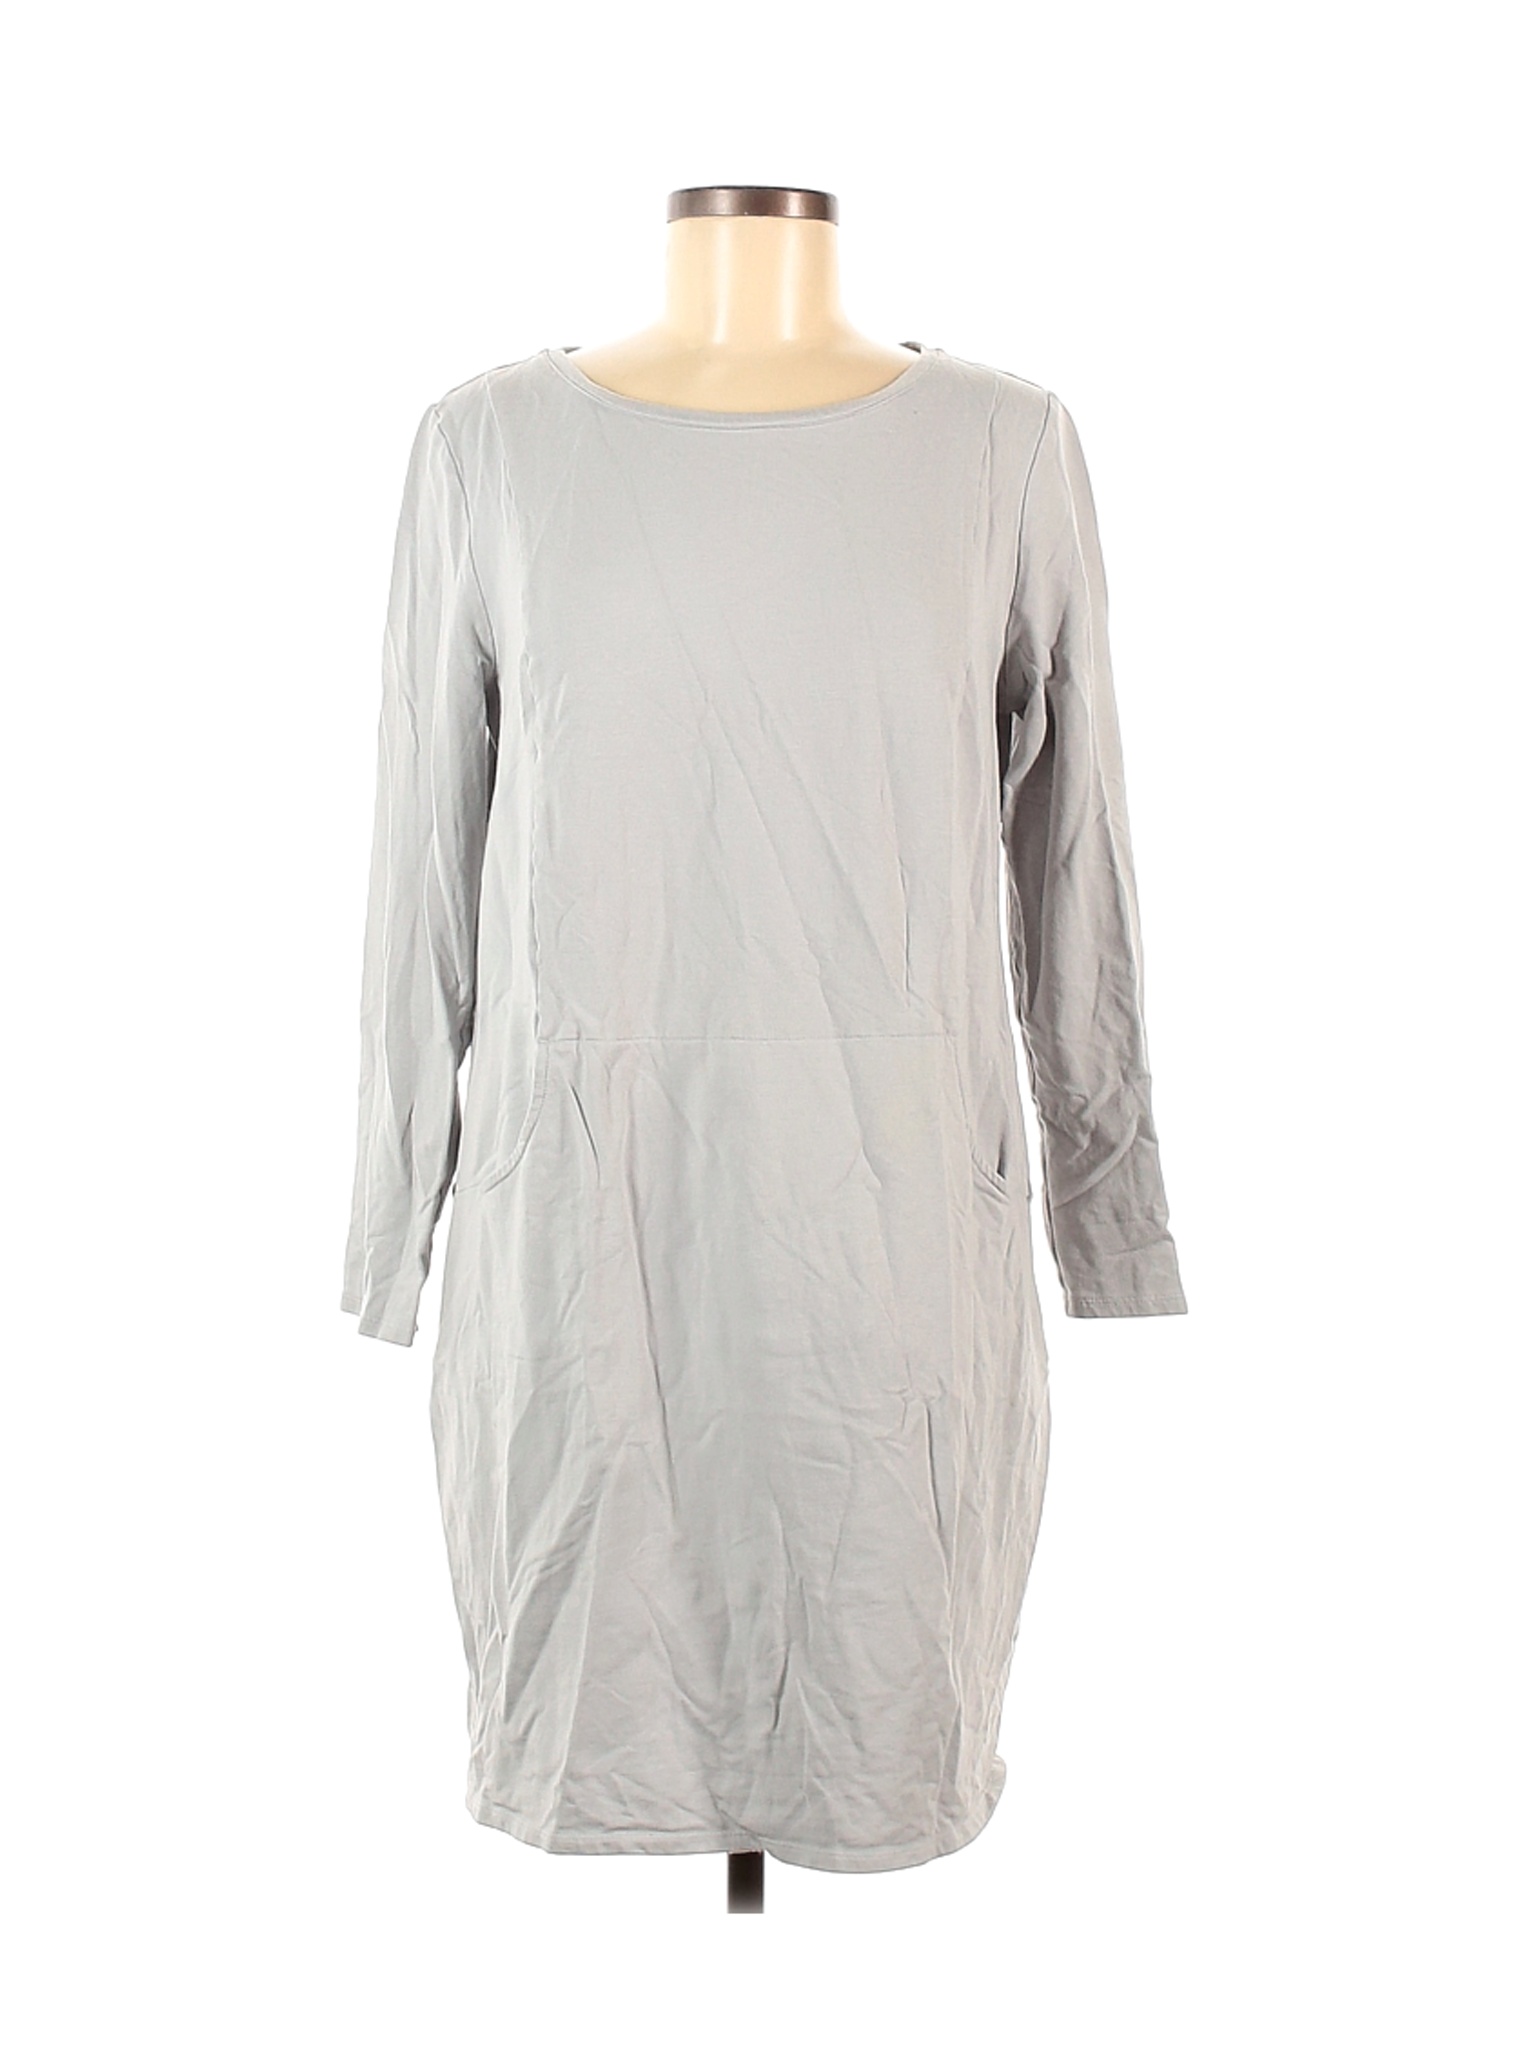 Purejill Women Gray Casual Dress M Petites | eBay